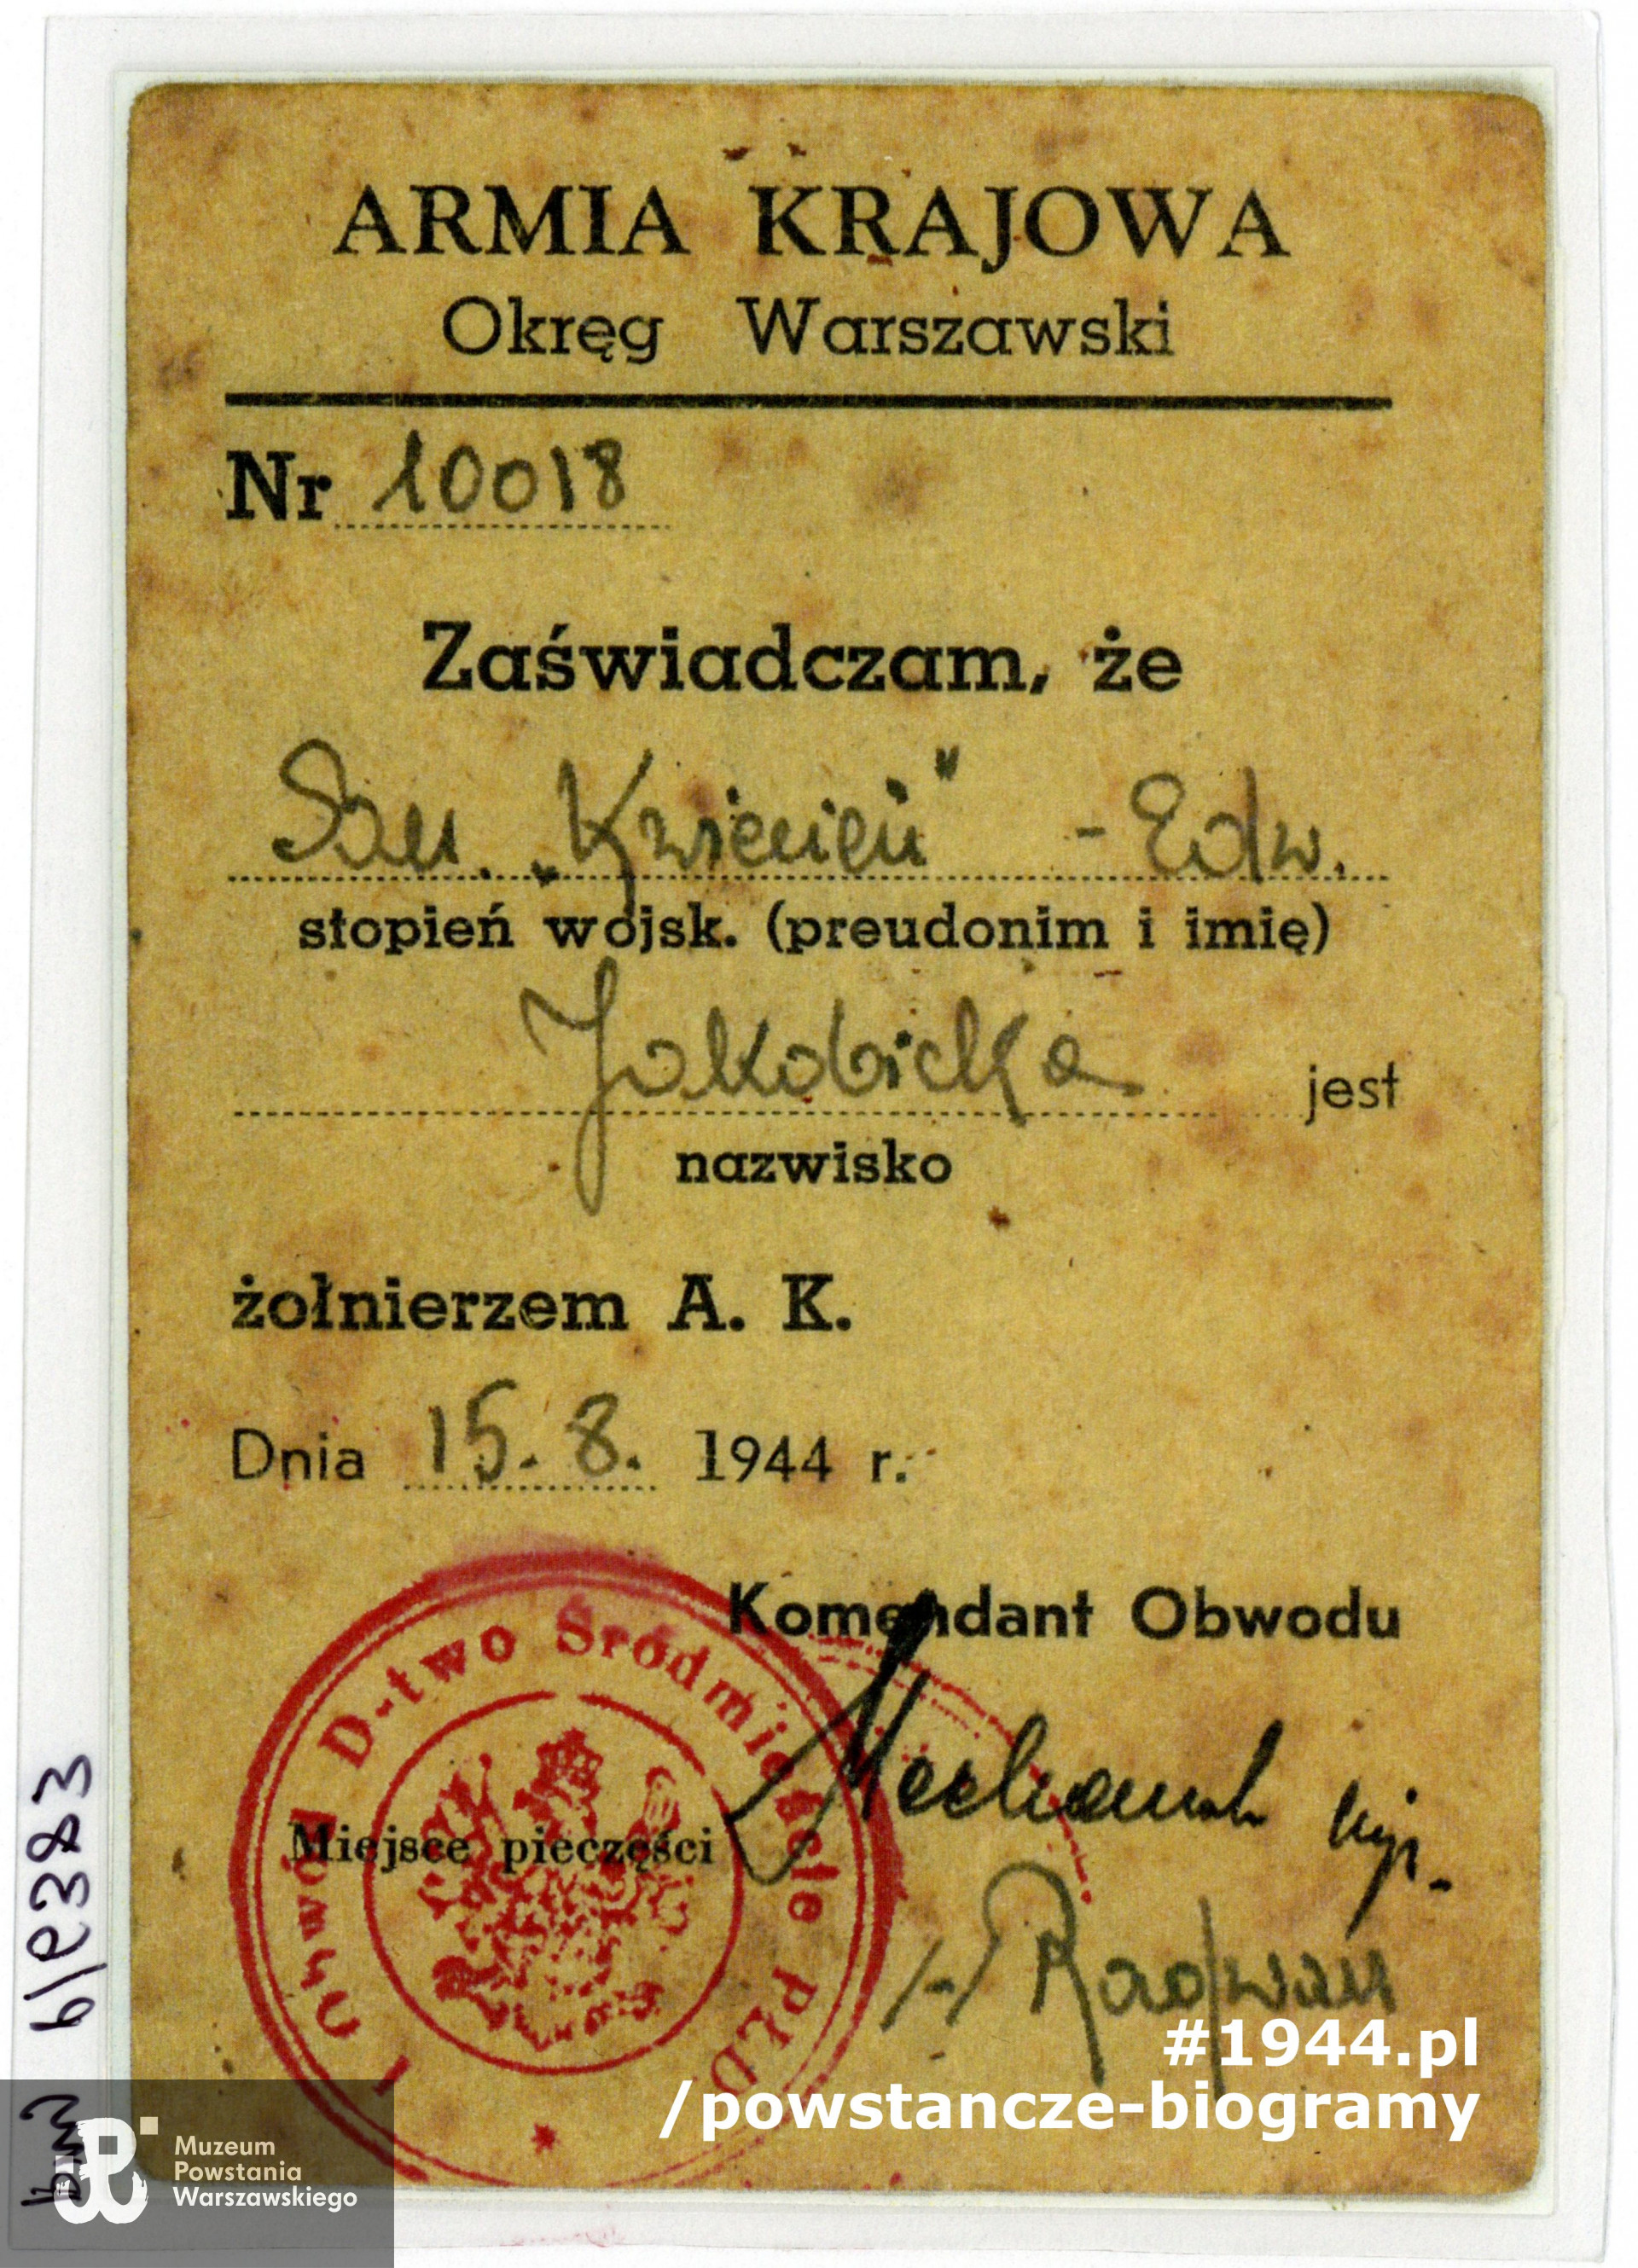 Kopa legitymacji sanitariuszki Edwardy Jakobickiej "Kwiecień". Ze zbiorów Muzeum Powstania Warszawskiego, przy P/6383